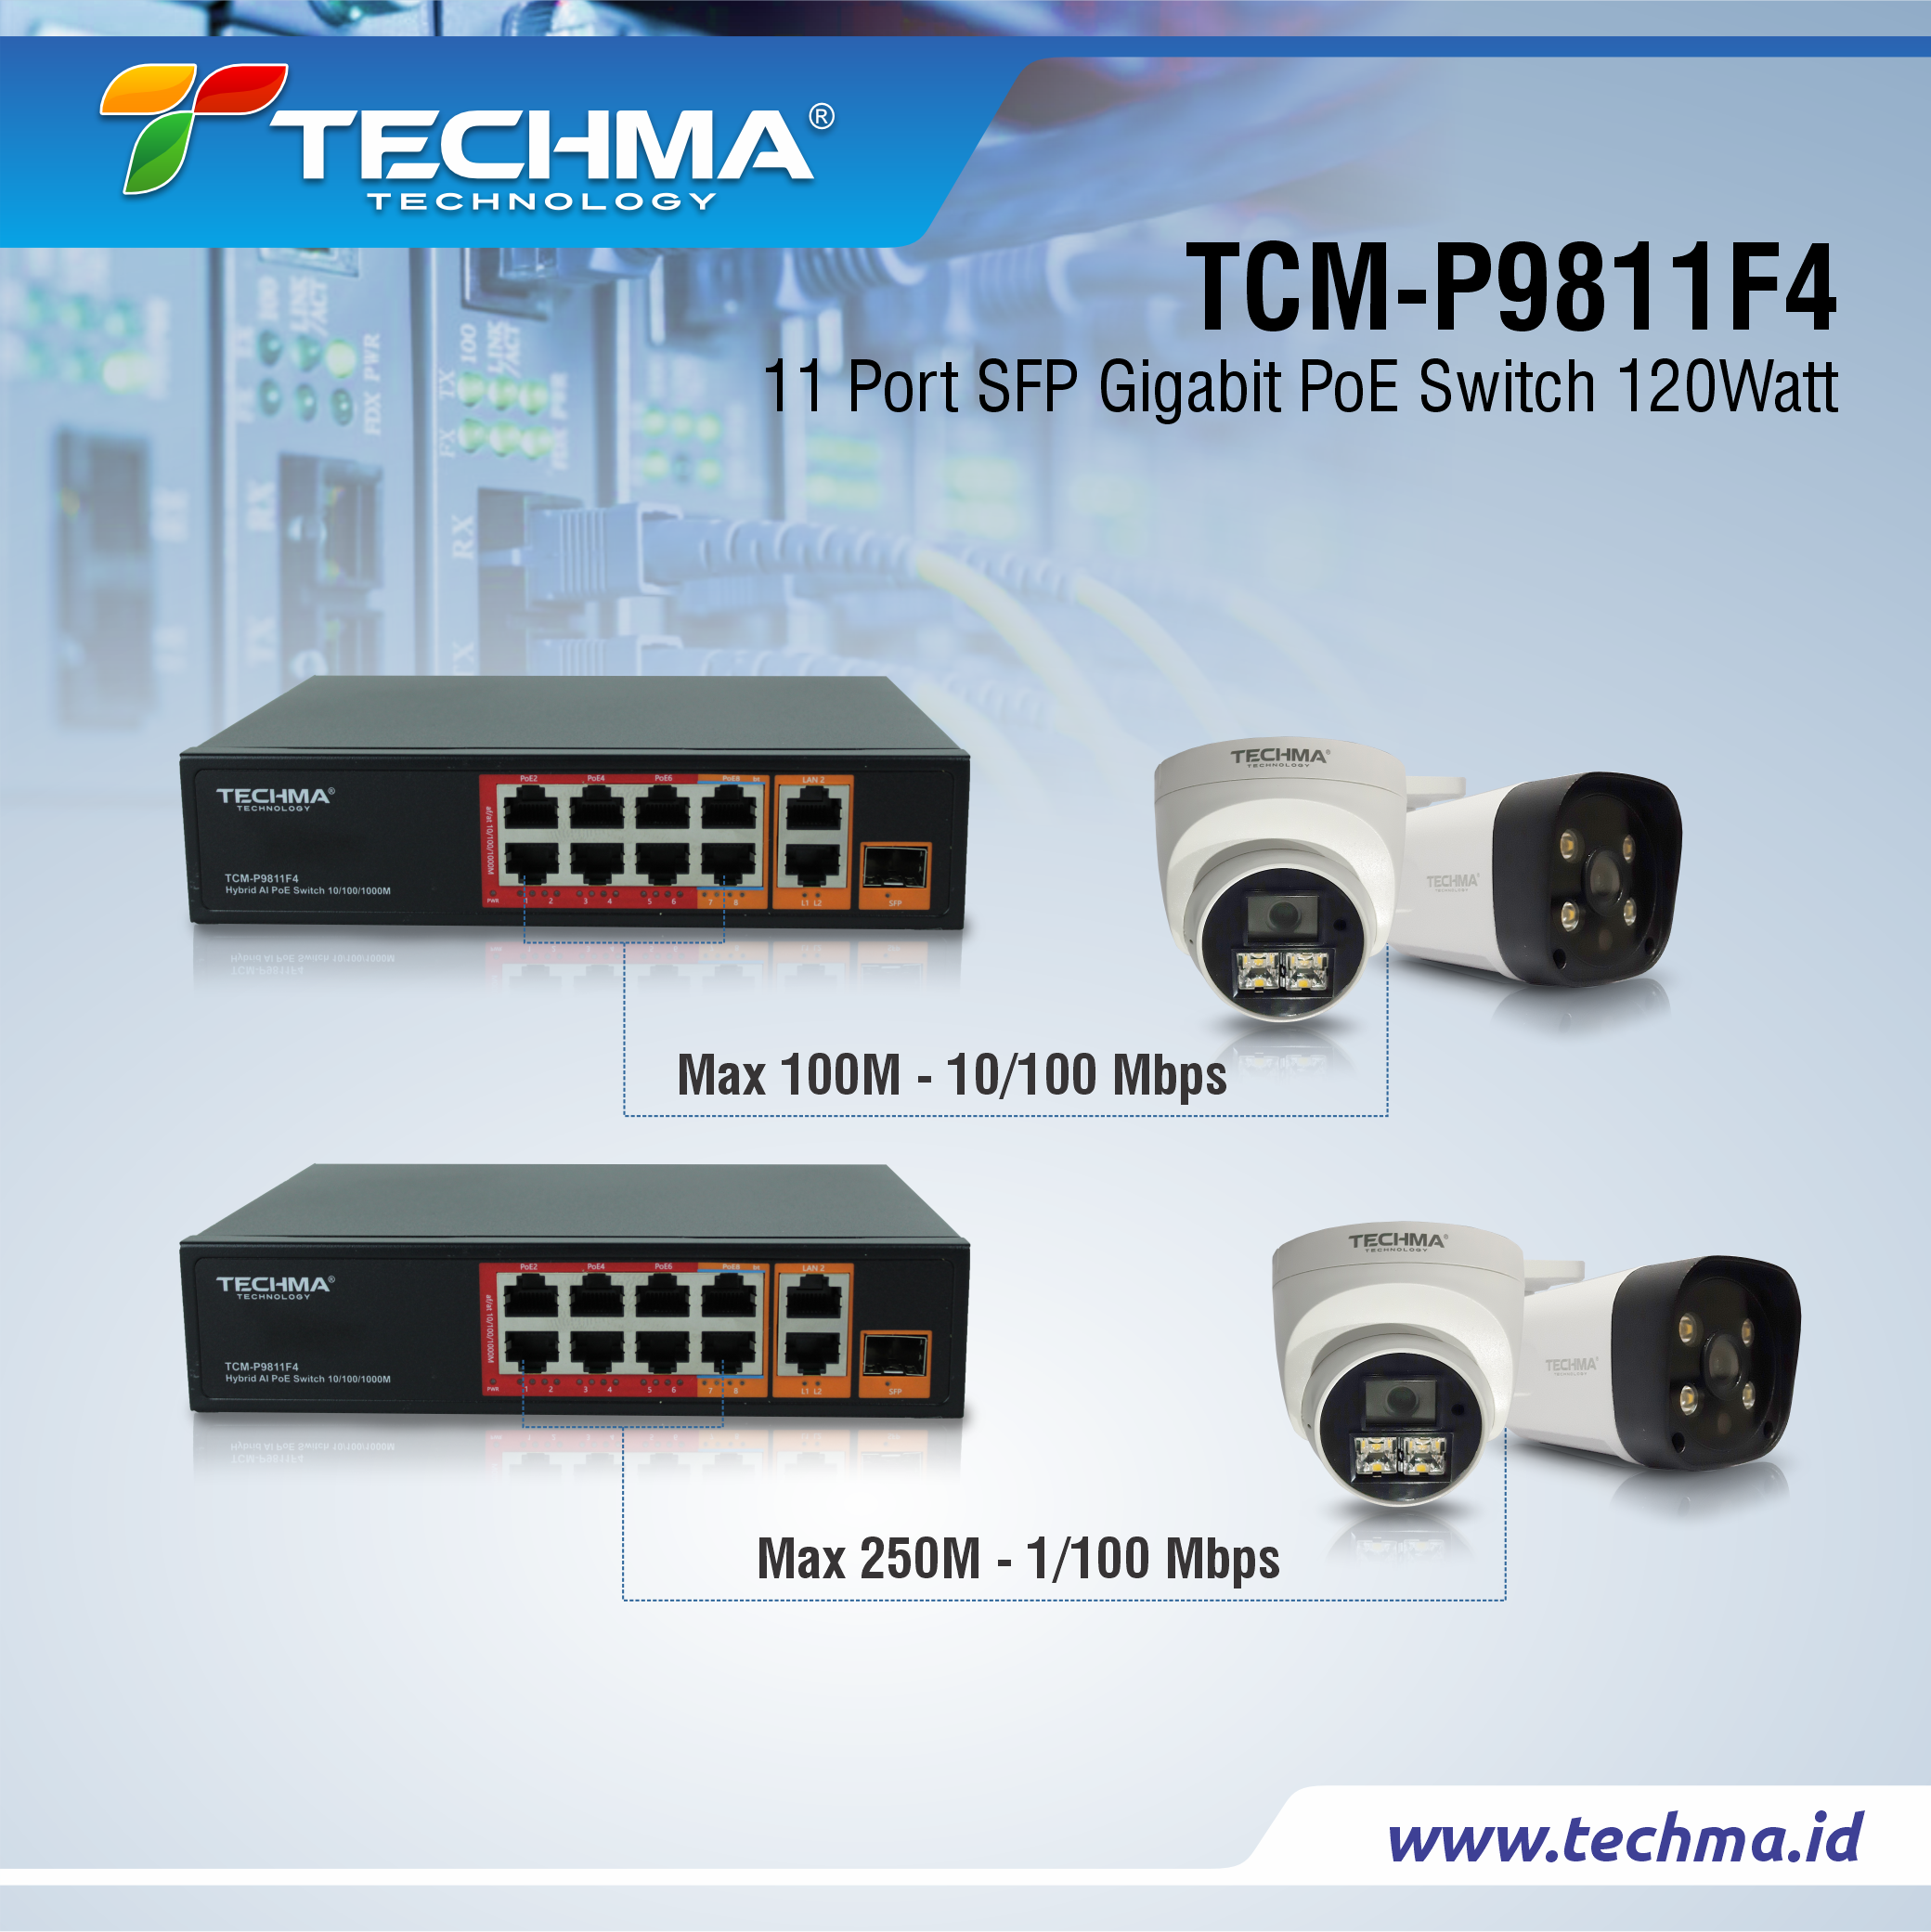 TCM-P9811F4 web 4